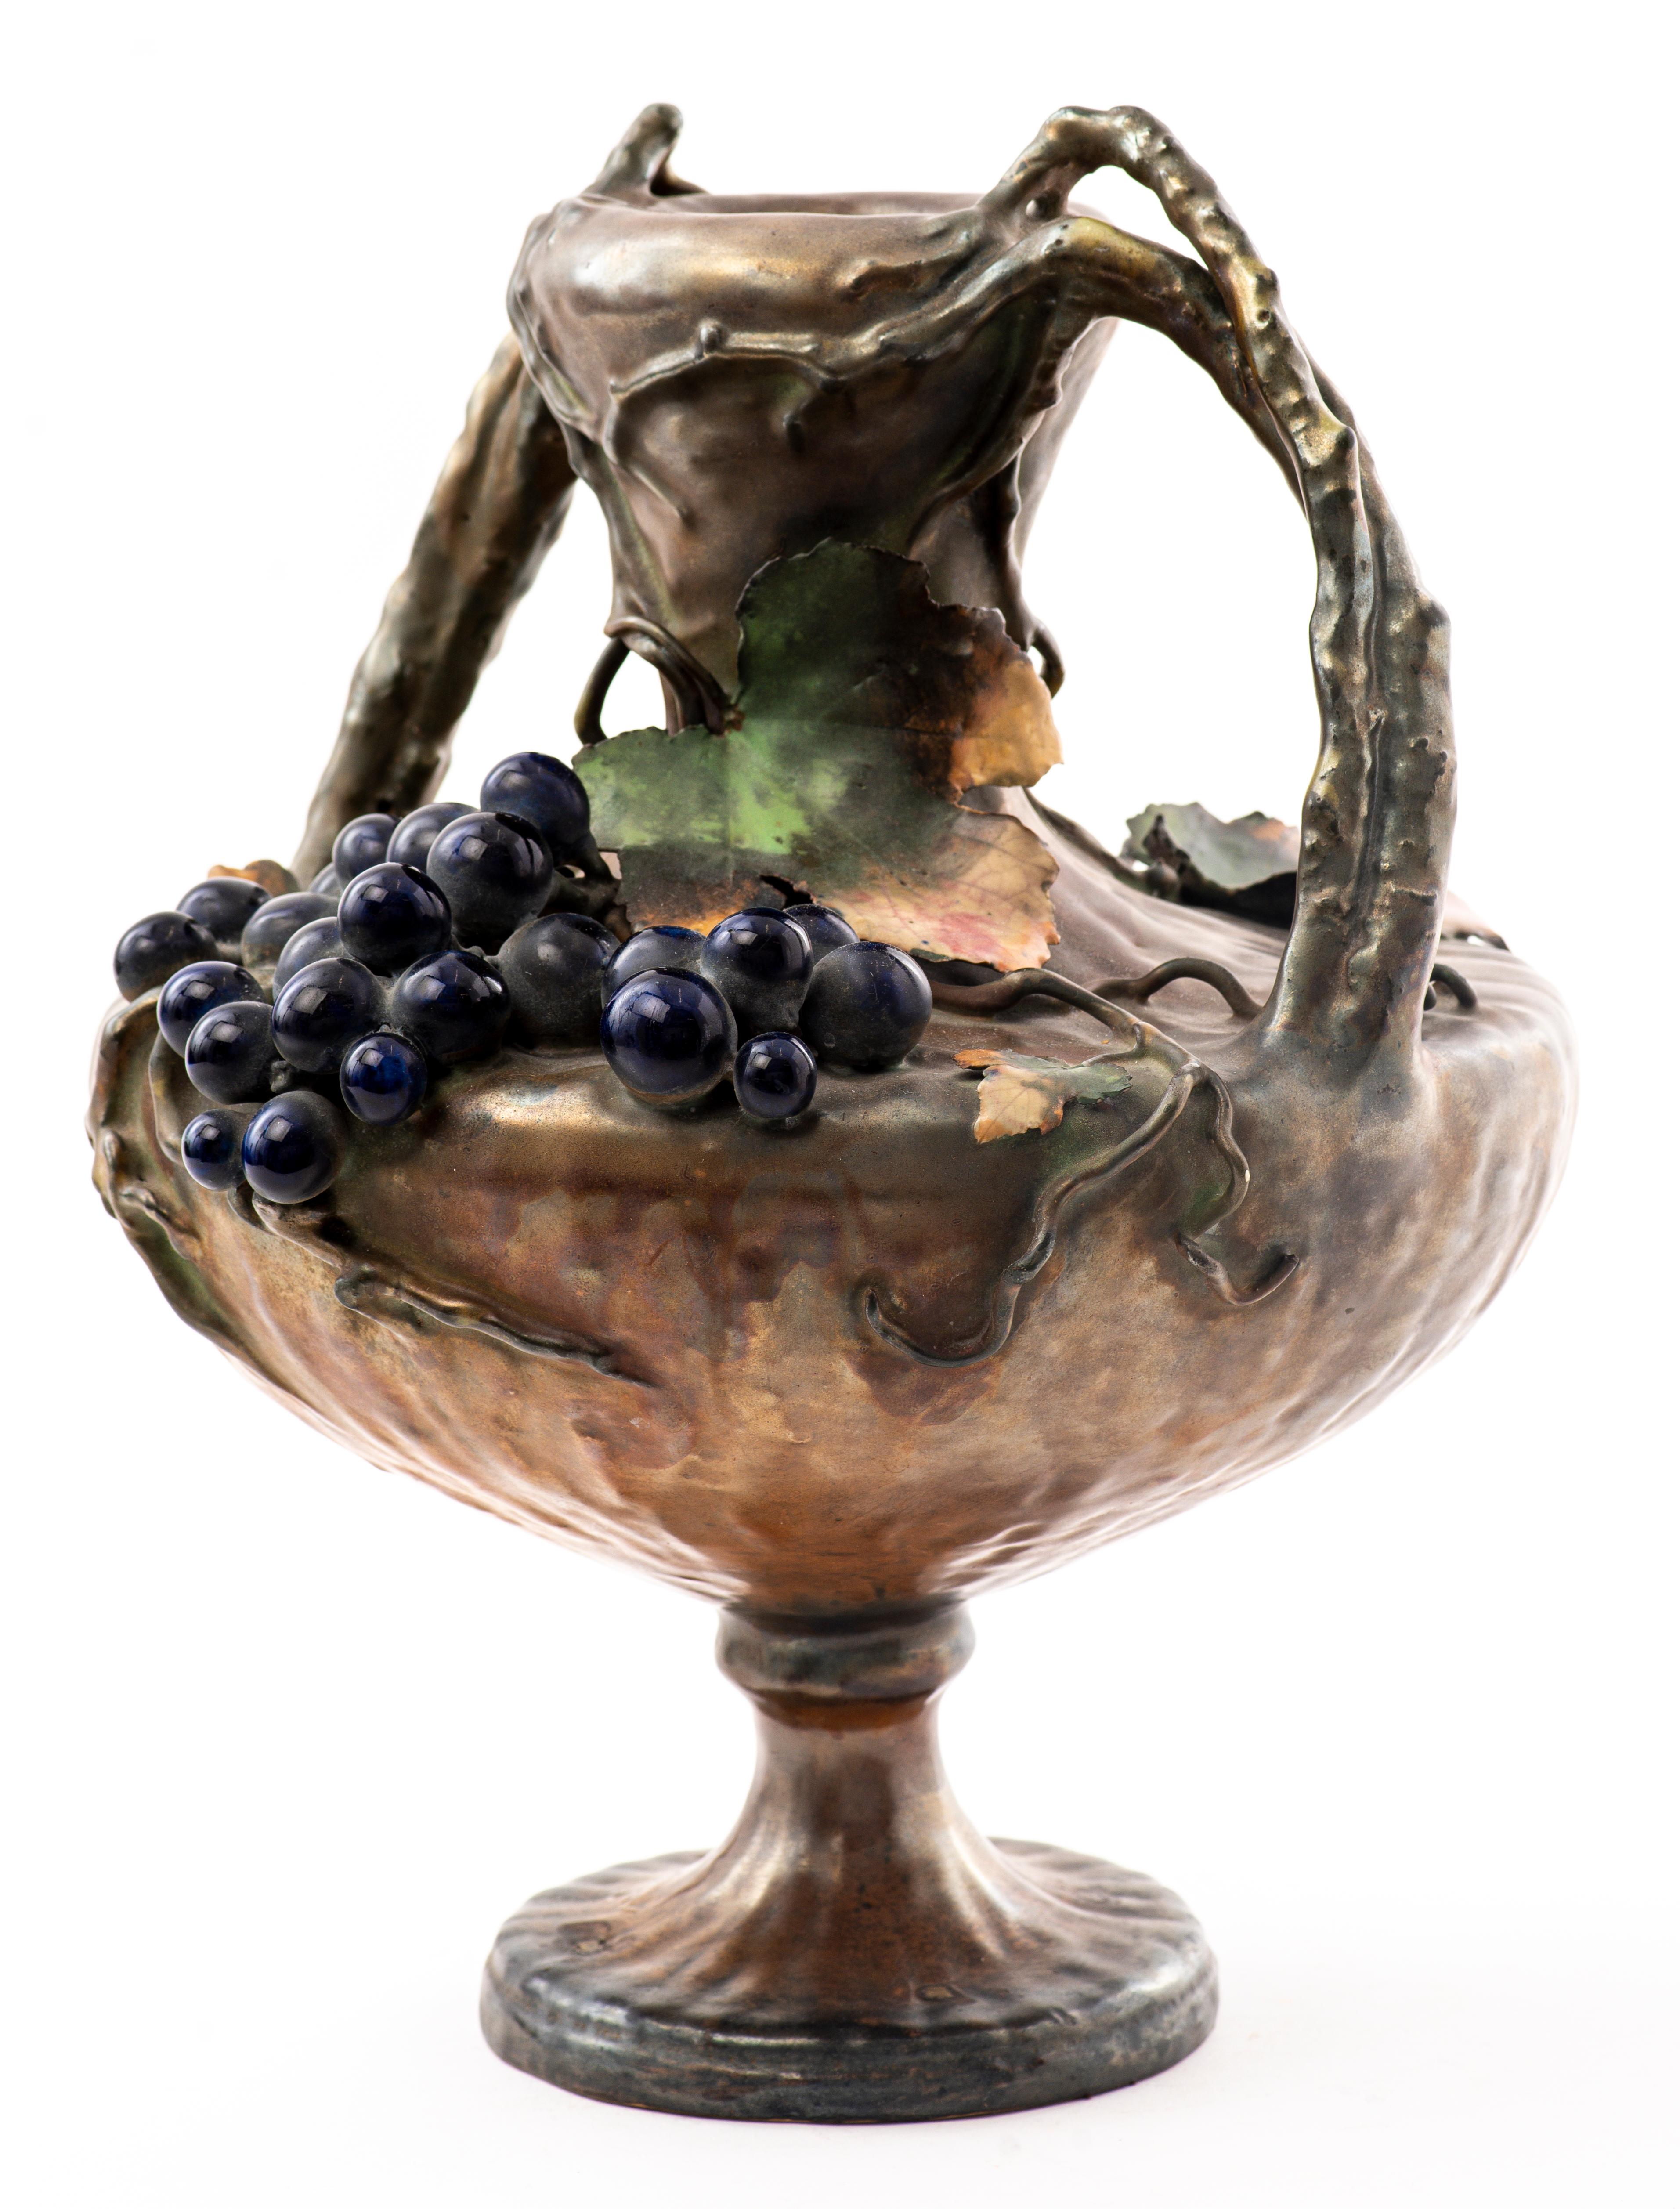 Amphora Österreichische Jugendstilvase aus Keramik mit zwei Henkeln, verziert mit hängenden Trauben, Ranken und Blättern. Markiert und nummeriert auf der Unterseite.
Abmessungen: 14